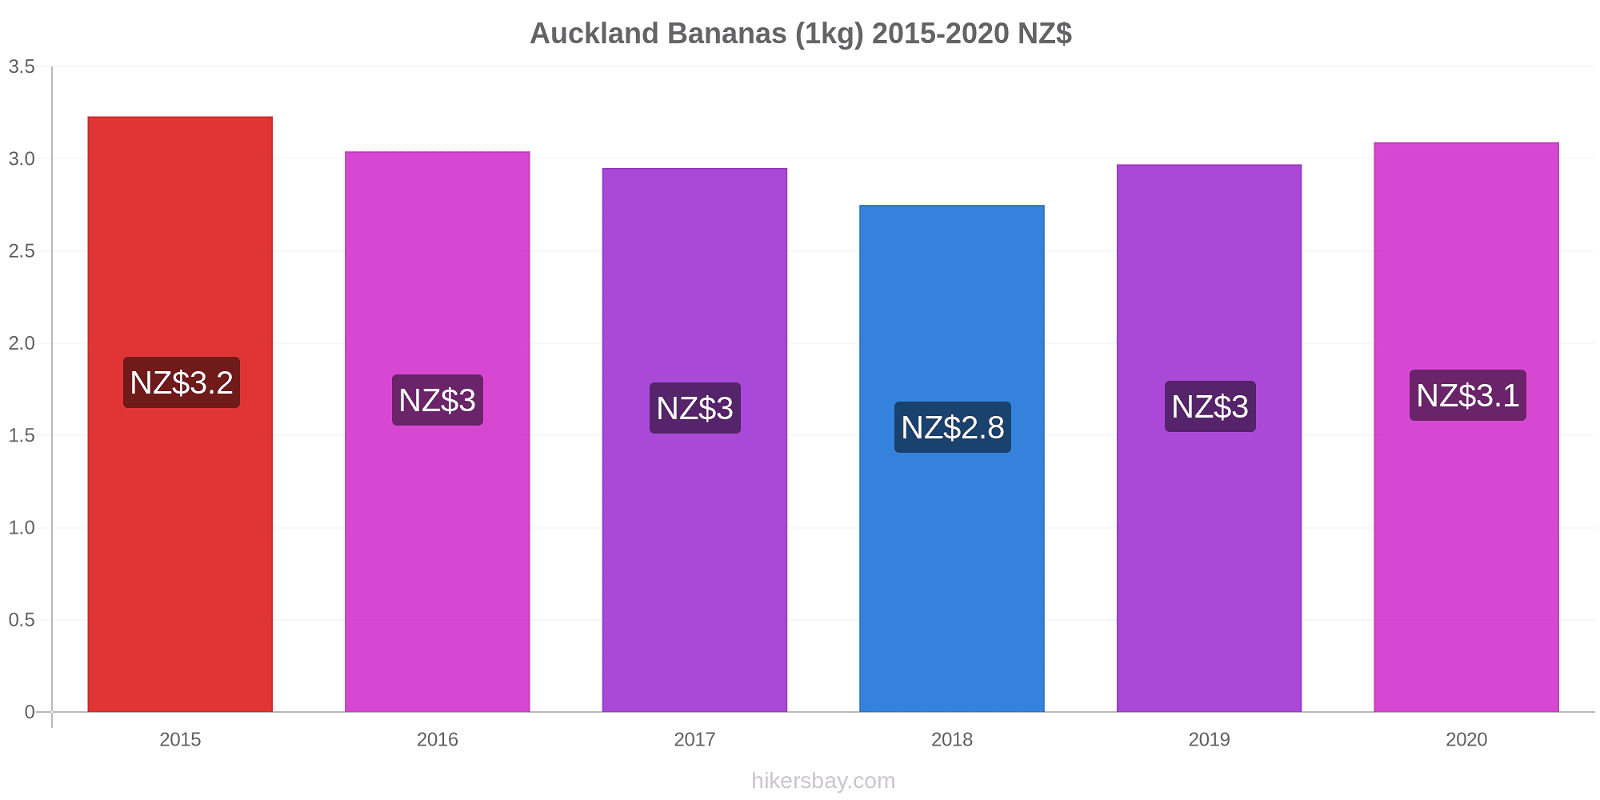 Auckland variação de preço Banana (1kg) hikersbay.com